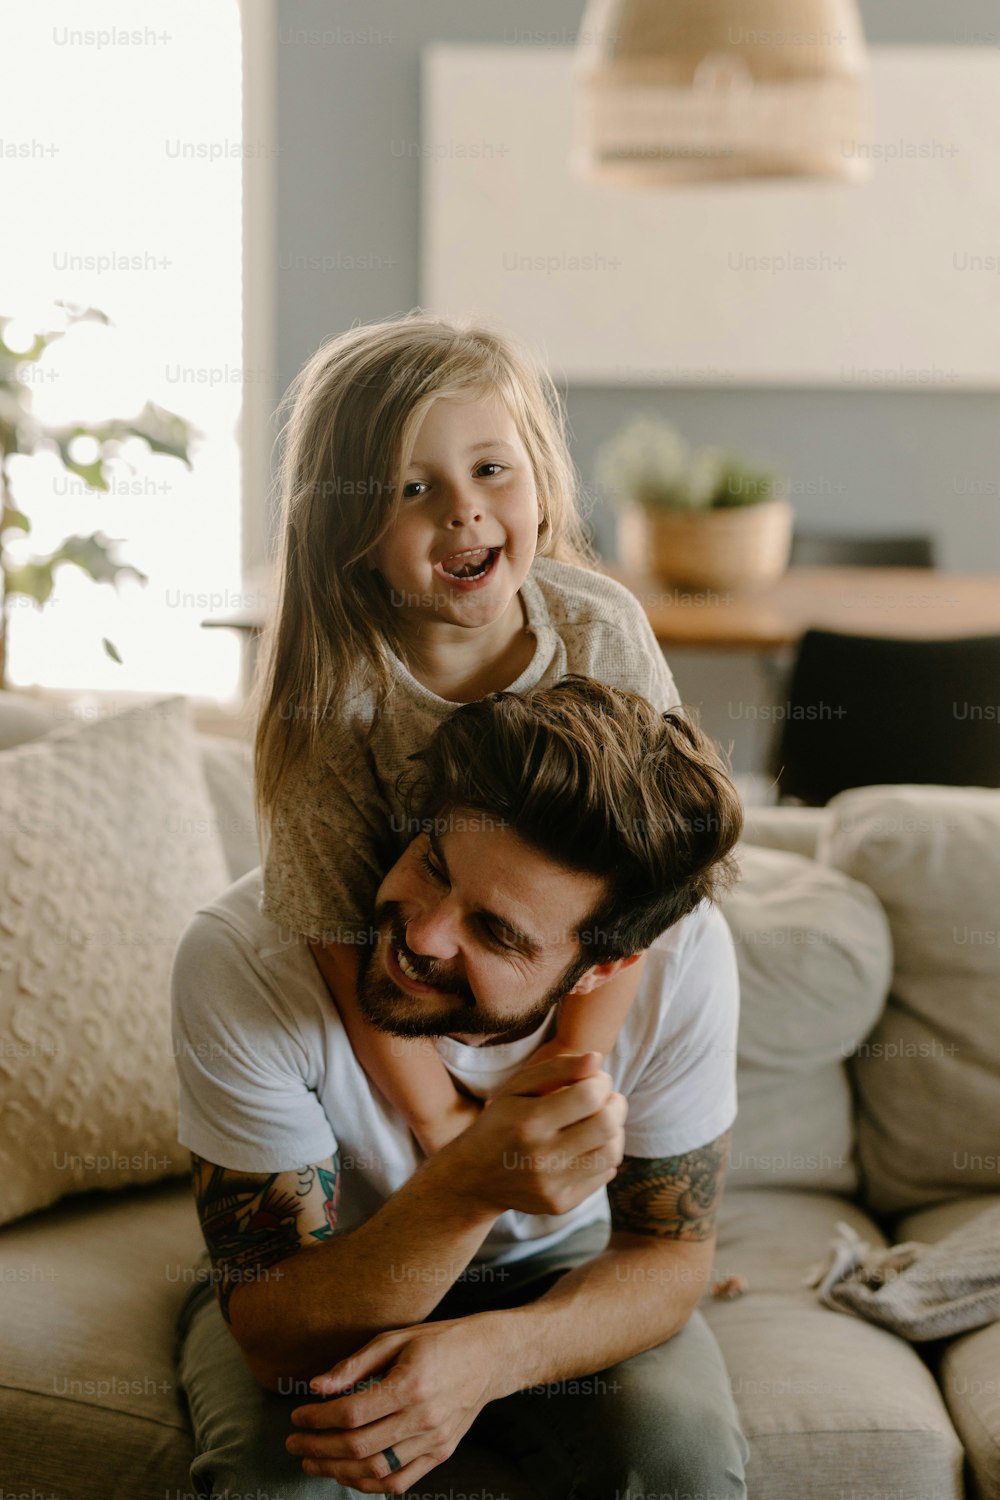 Un hombre sosteniendo a una niña pequeña mientras está sentado en un sofá